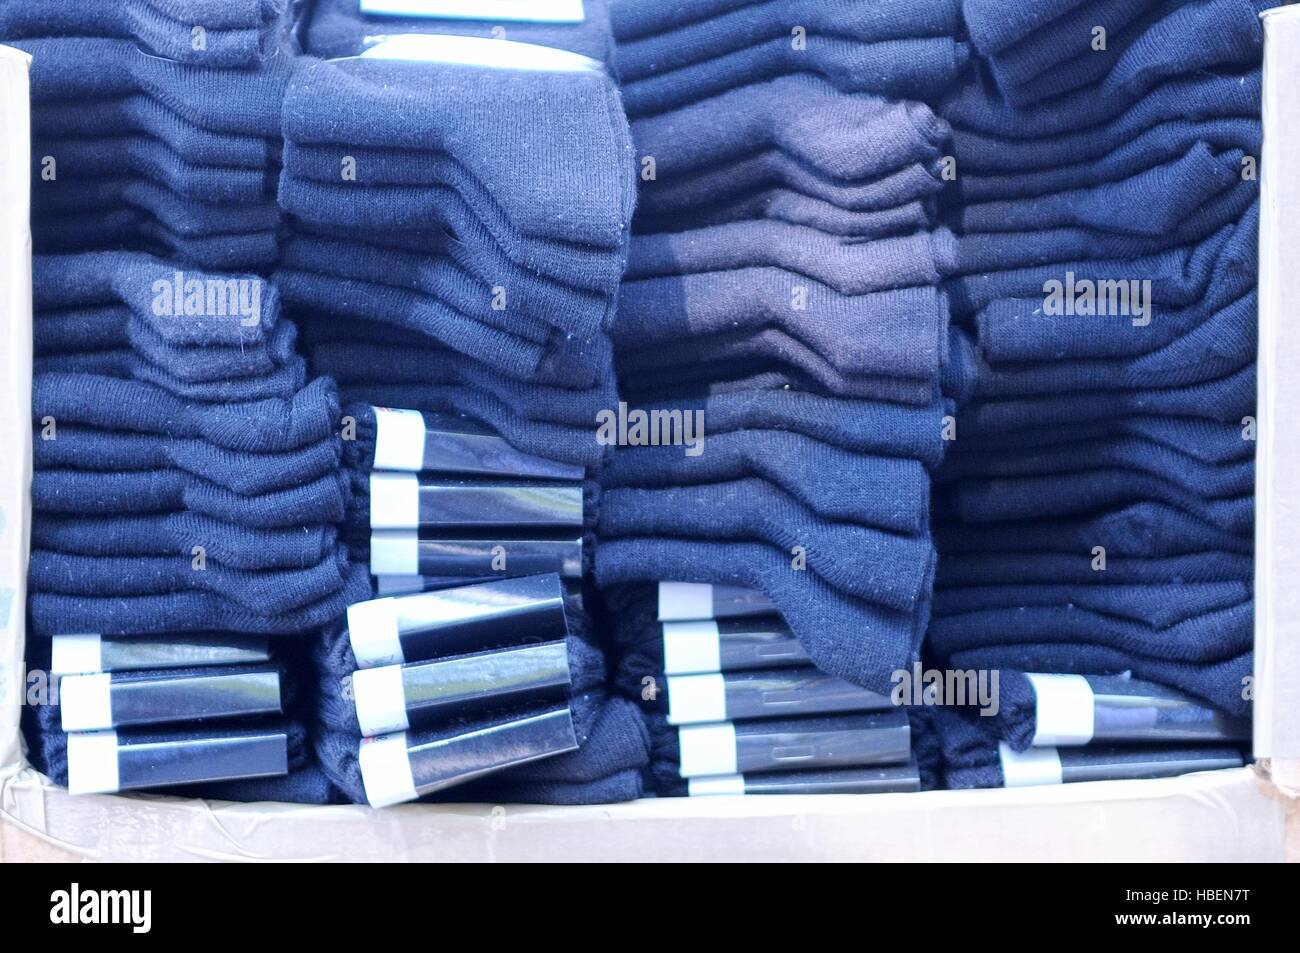 Box full of new blue socks Stock Photo